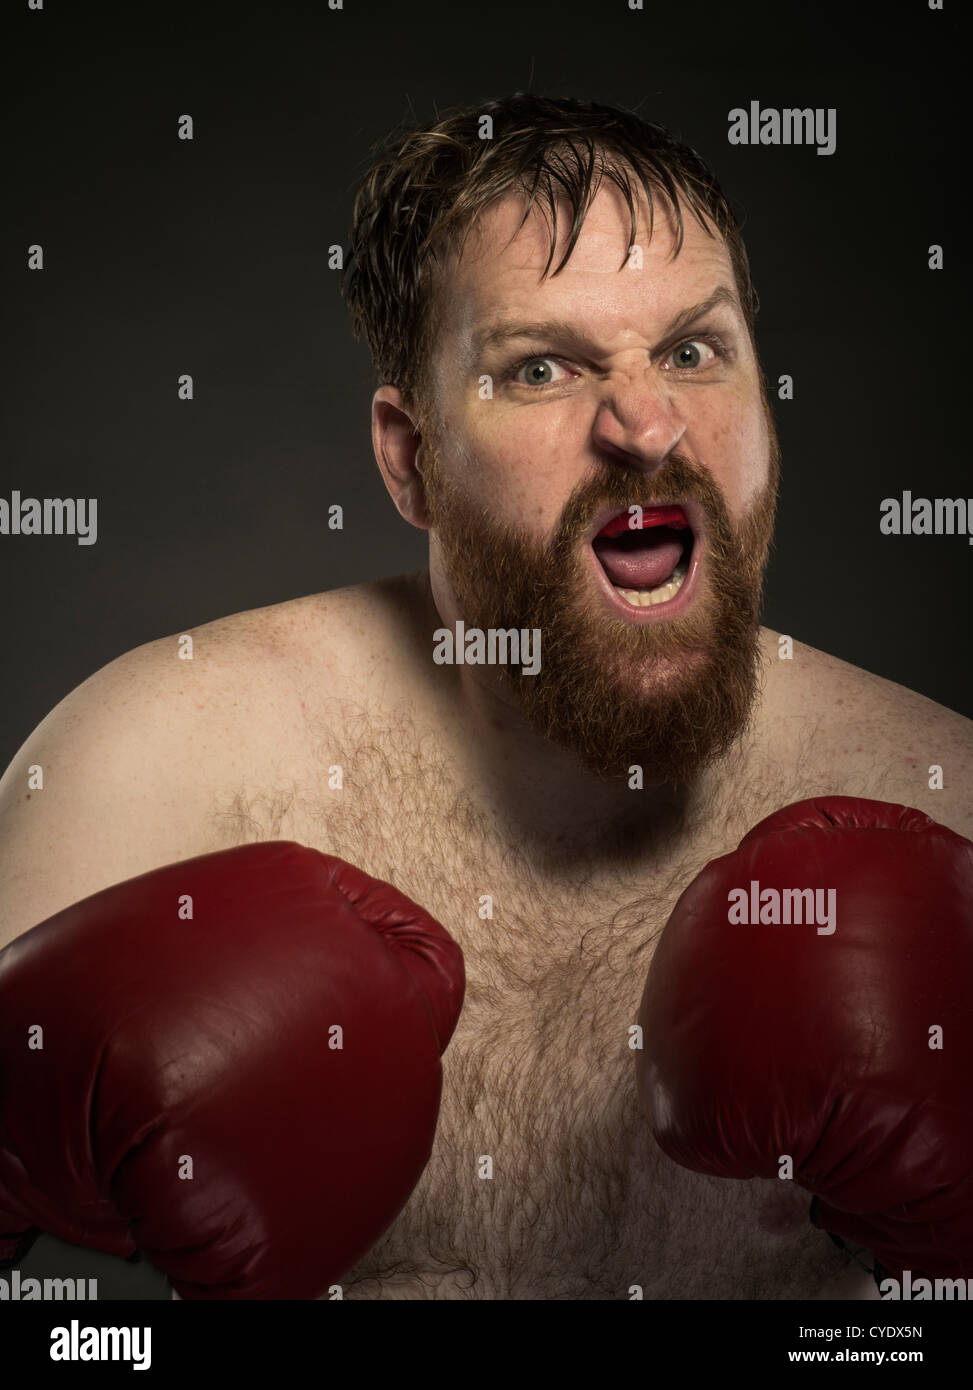 Schwergewichts-Boxer mit roten Handschuhen und Bart Stockfoto